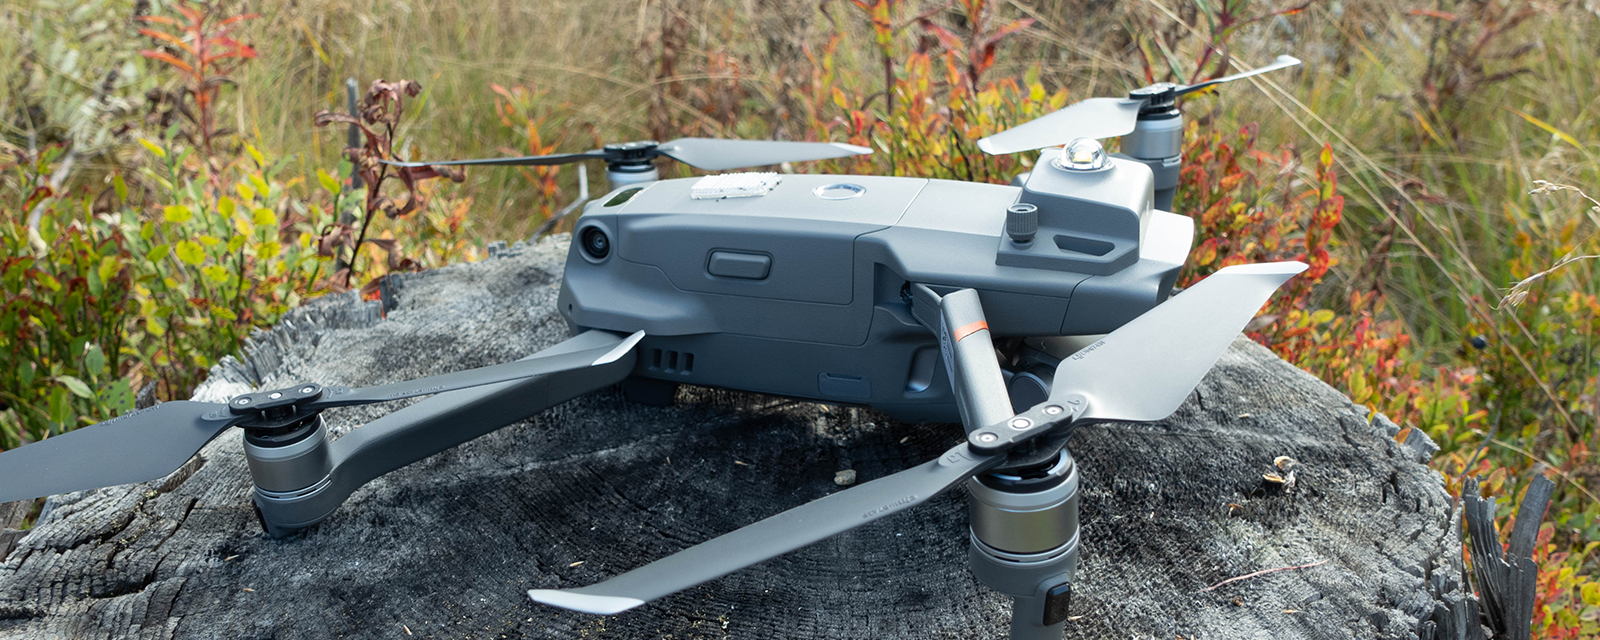 En drone på bakken